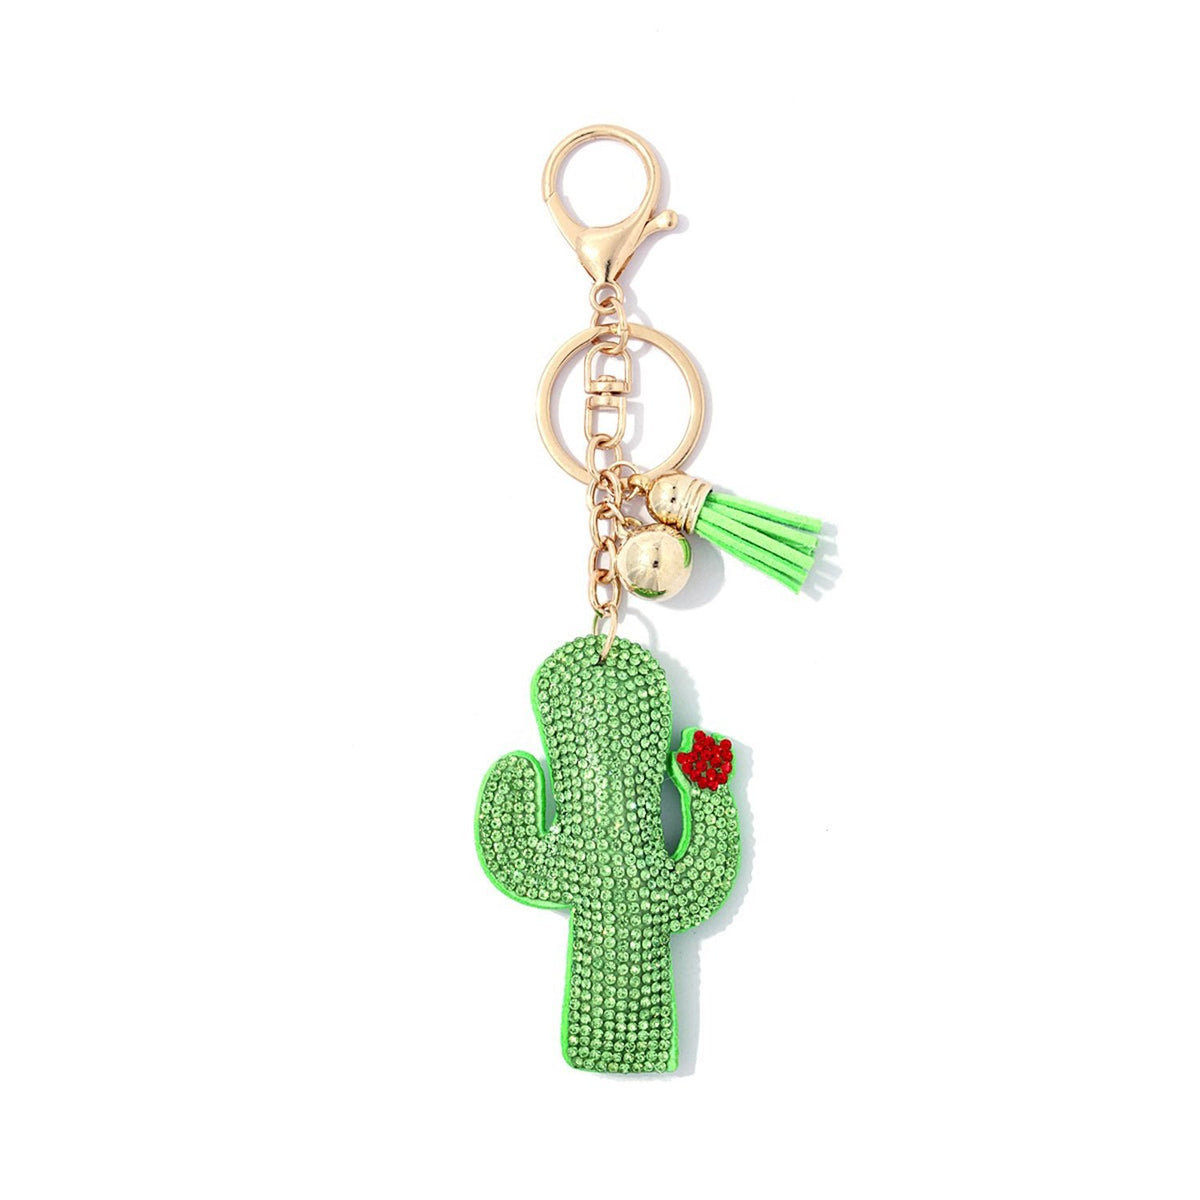 Saguaro Cactus Key Chain - Key Chains